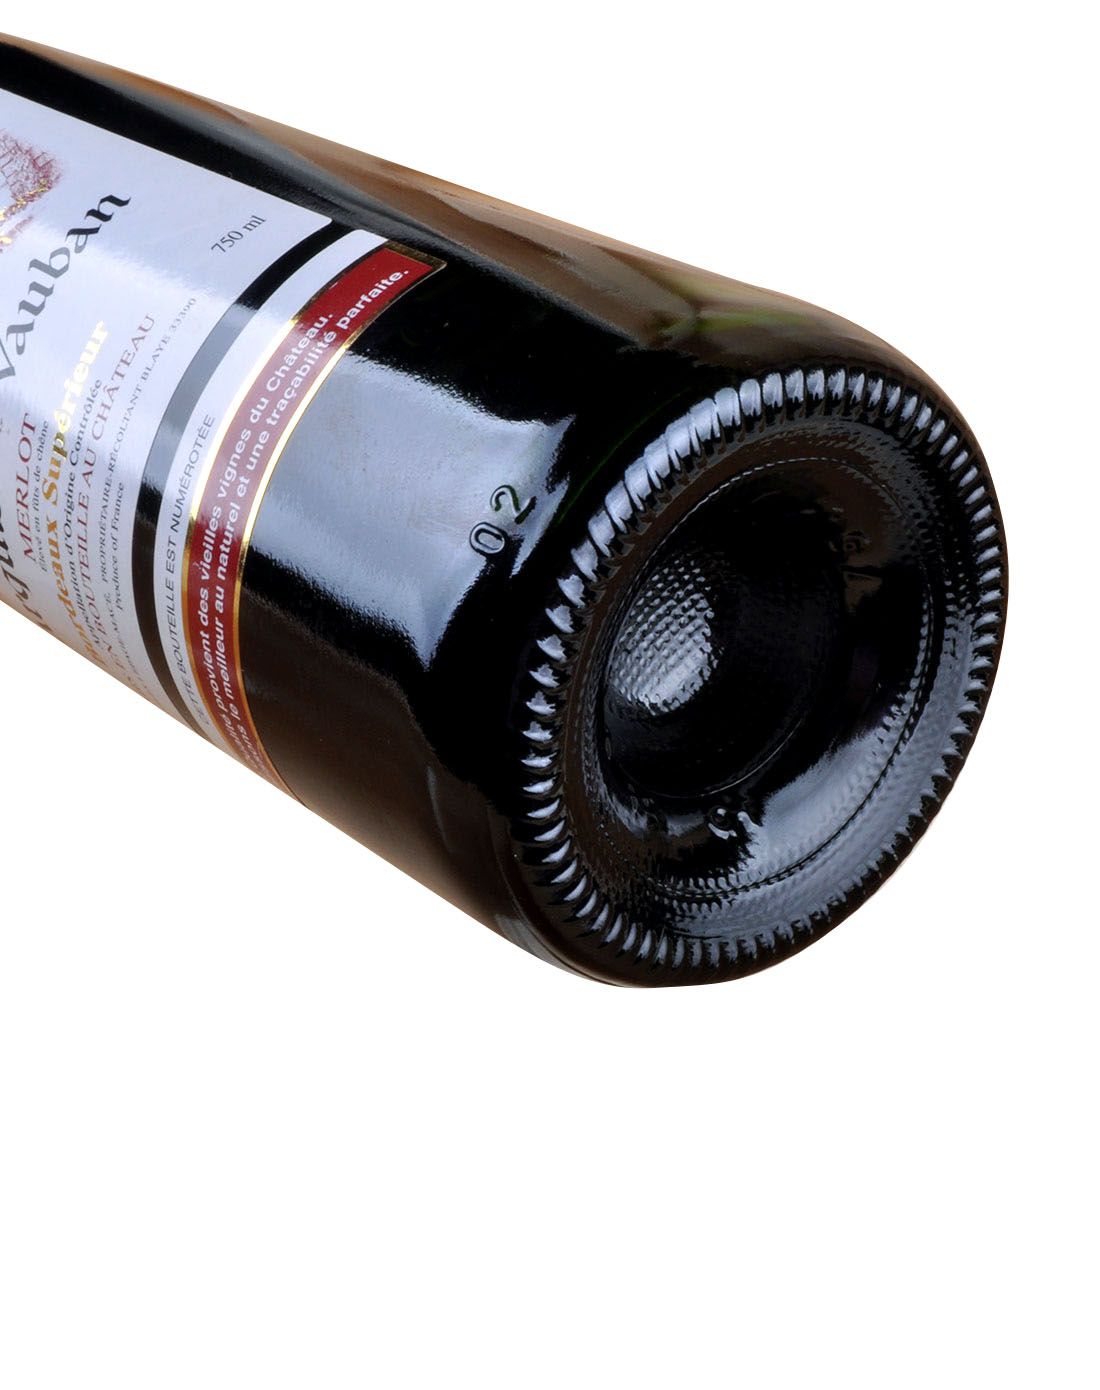 法国 沃邦侯爵酒堡优质波尔多干红葡萄酒 750ml*6